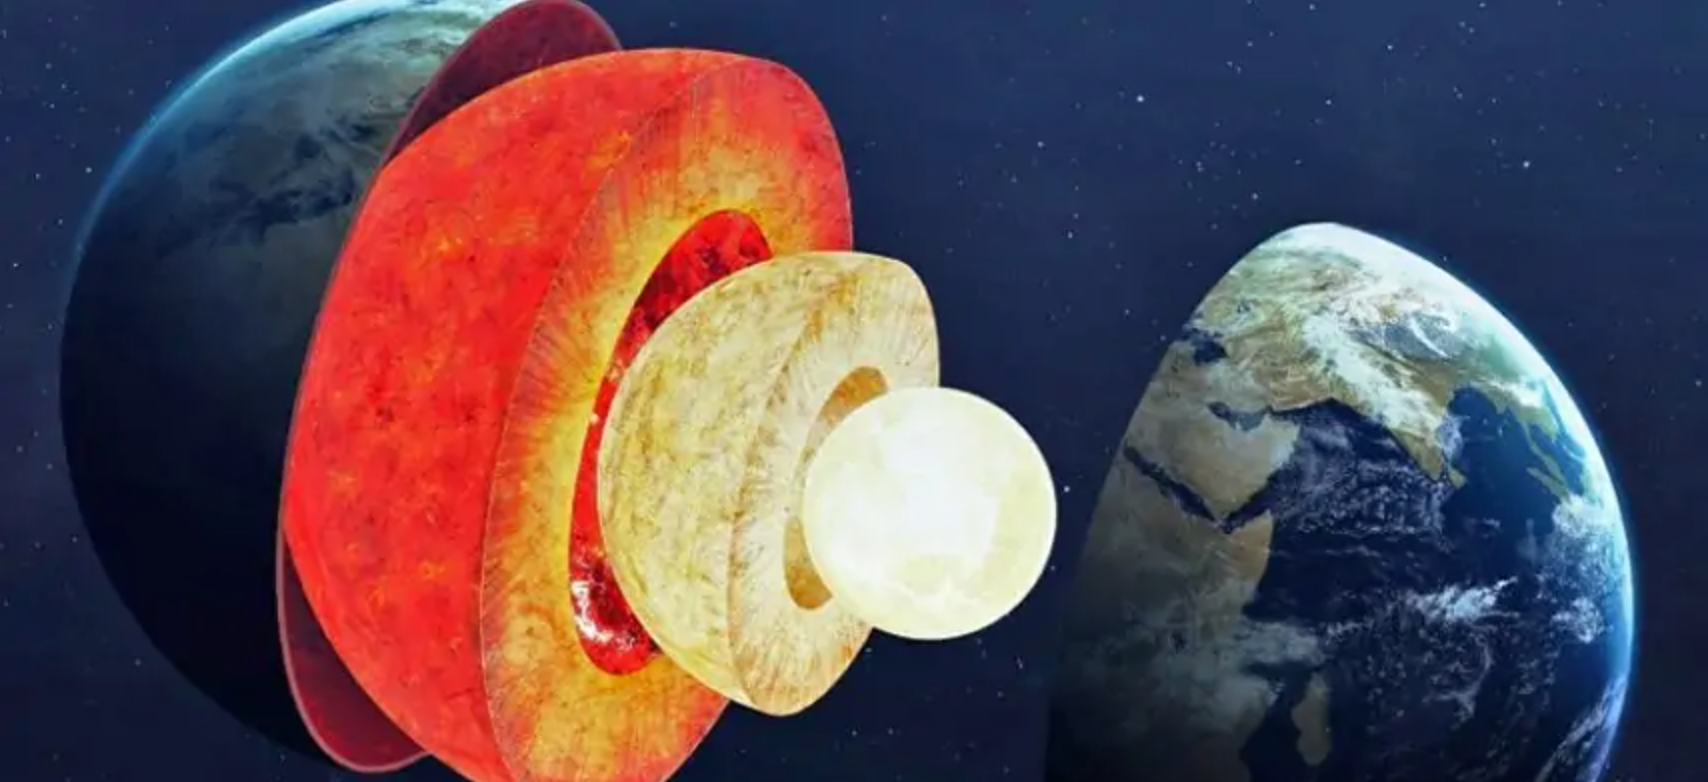 Ученые обнаружили признаки скрытой структуры внутри ядра Земли